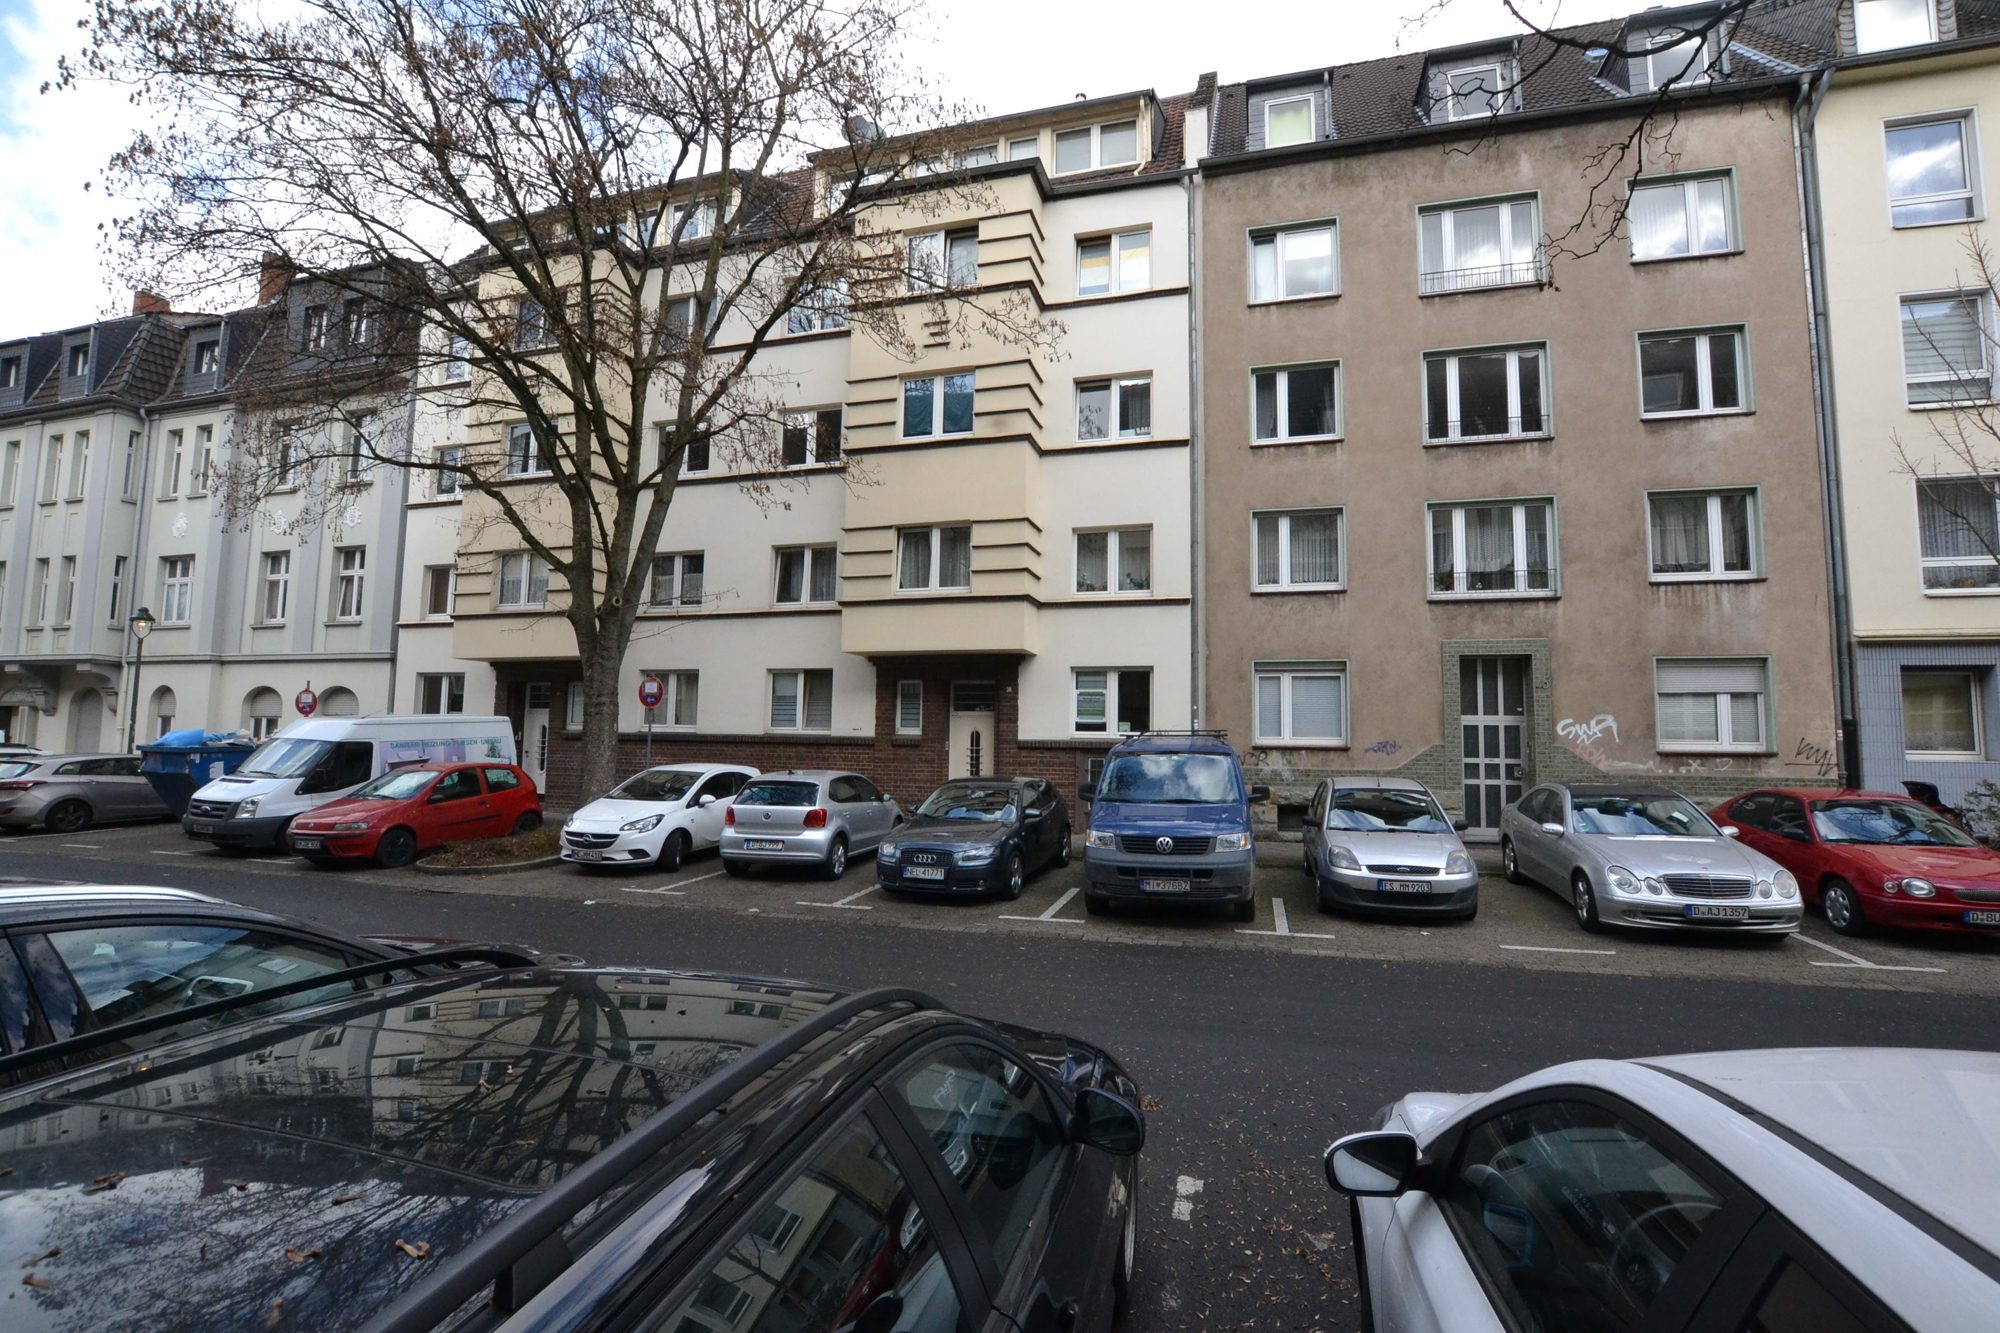 Peter Busch Immobilien GmbH - Immobilienangebot - Düsseldorf - Alle - Solides Mehrfamilienhaus in gesuchter Wohnlage
Düsseldorf Oberbilk